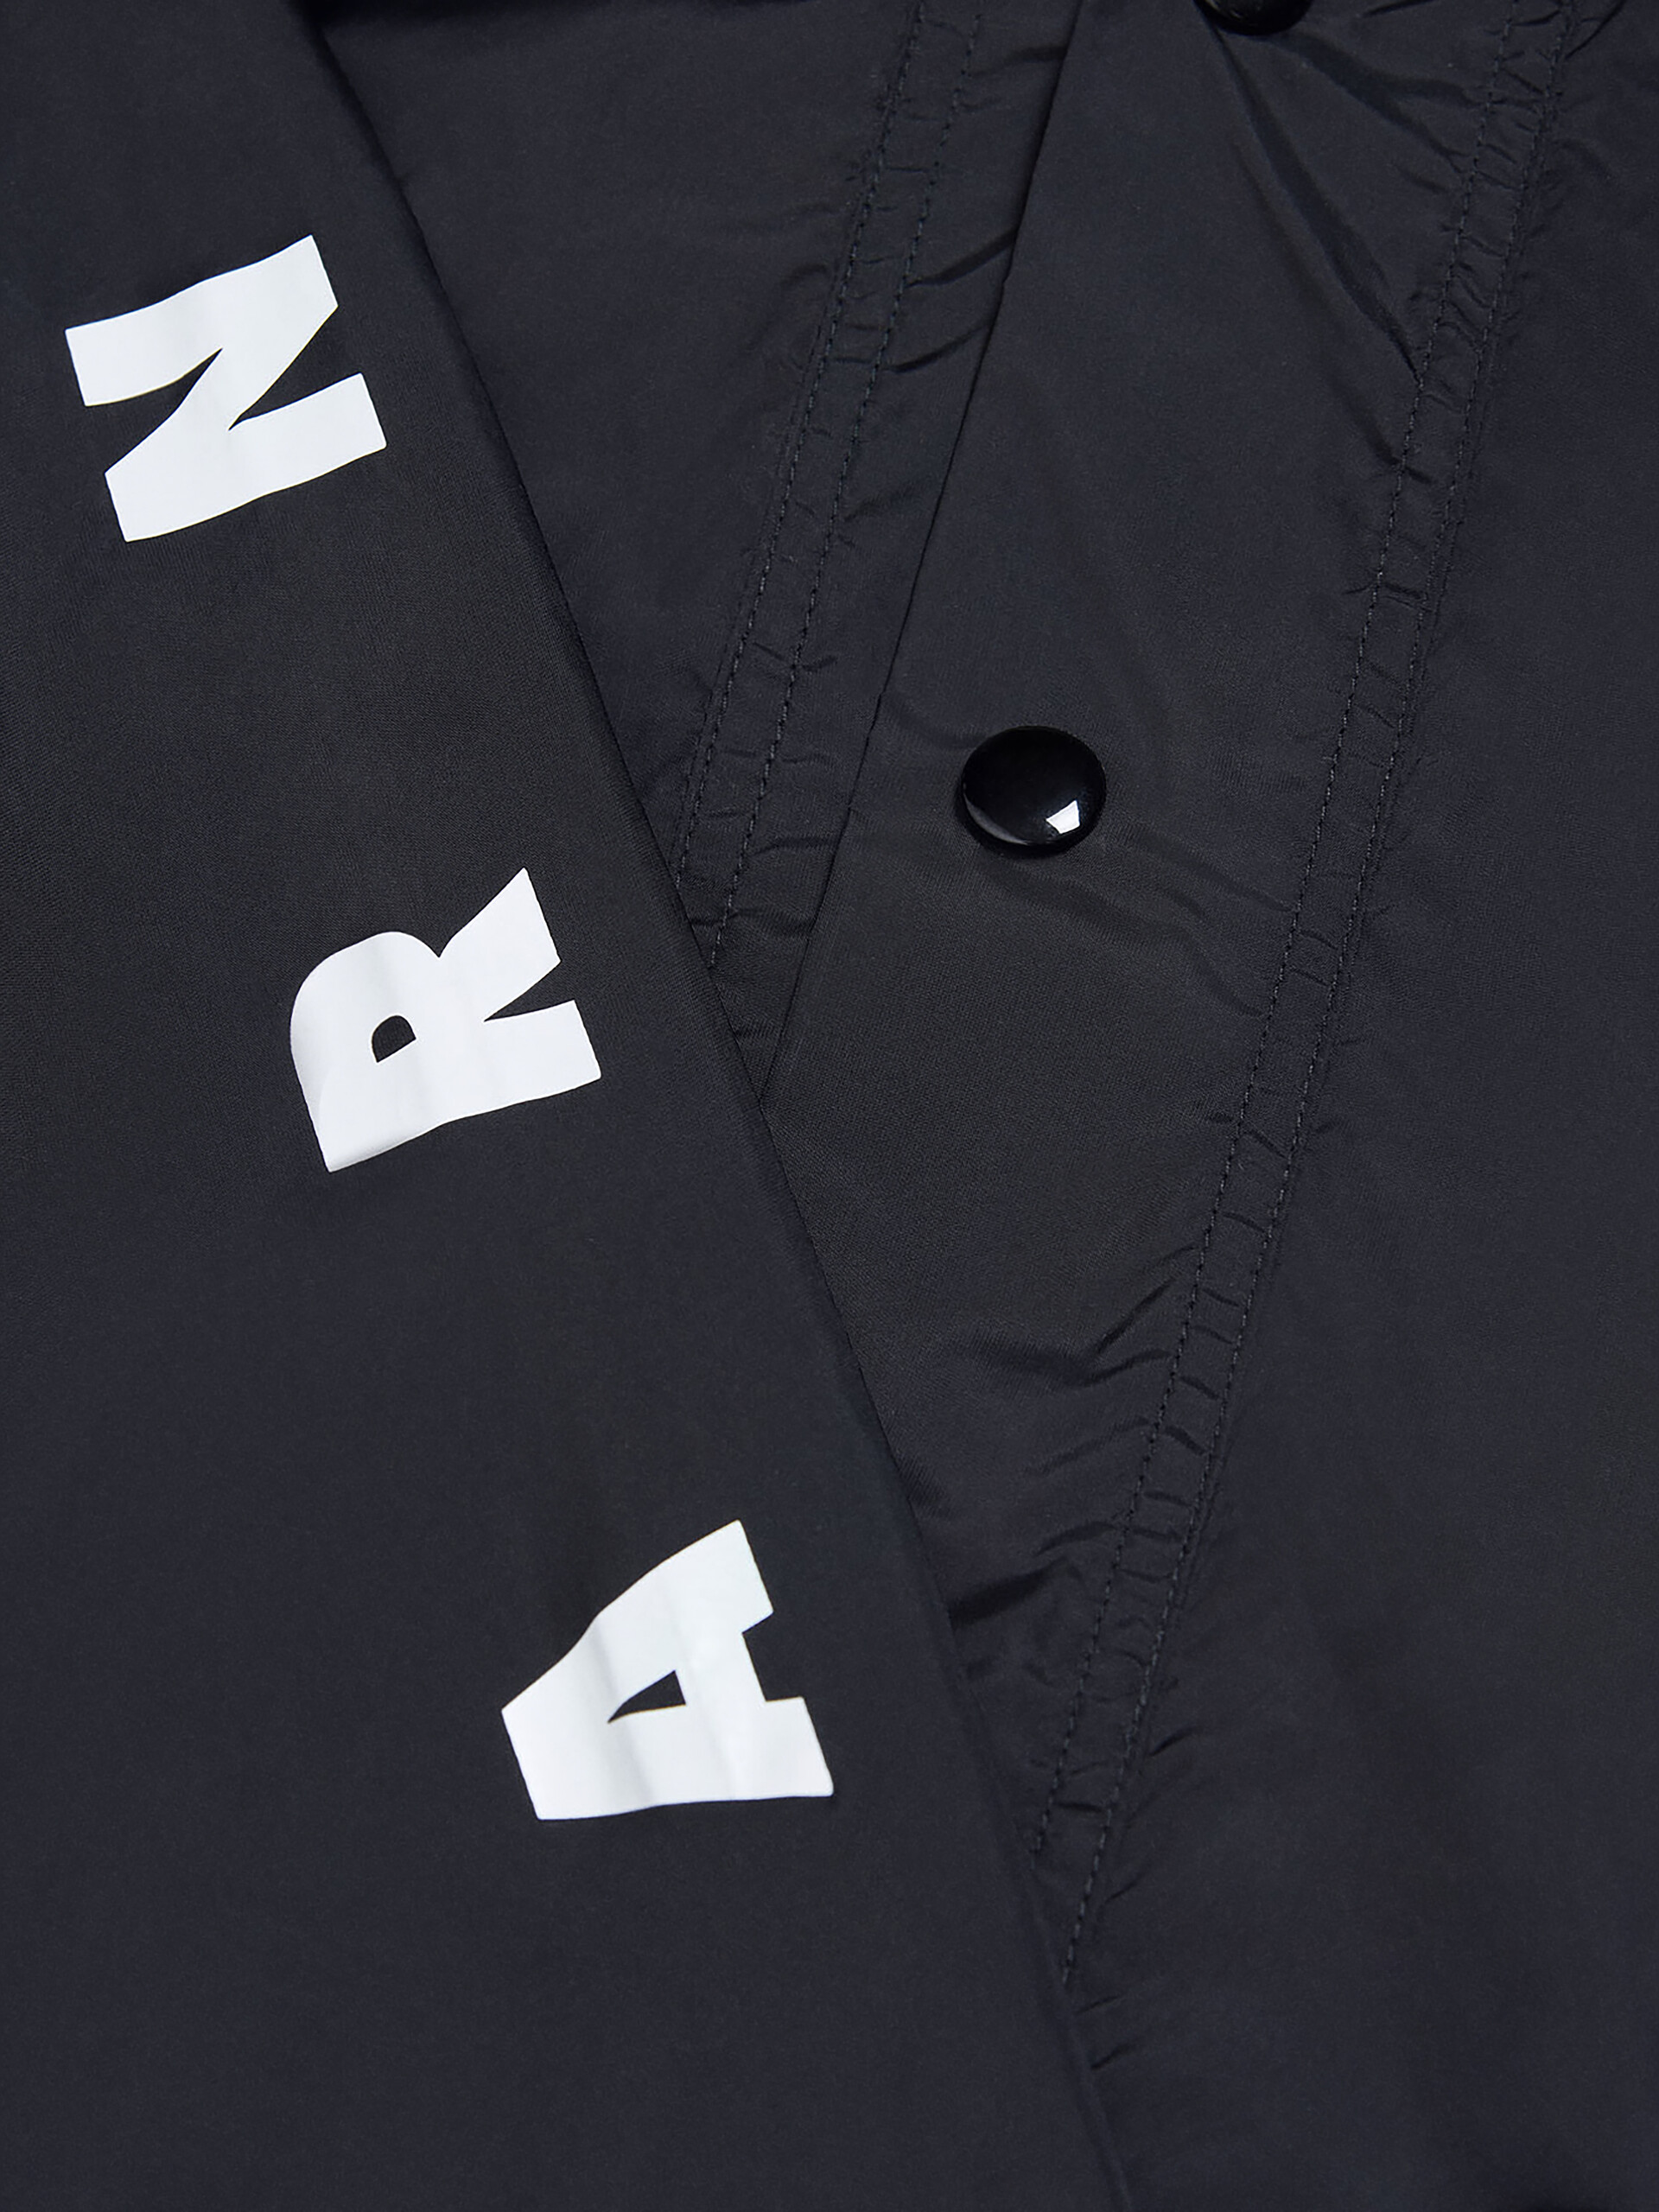 Chaqueta impermeable con capucha negra con logotipo en las mangas - Chaquetas - Image 3